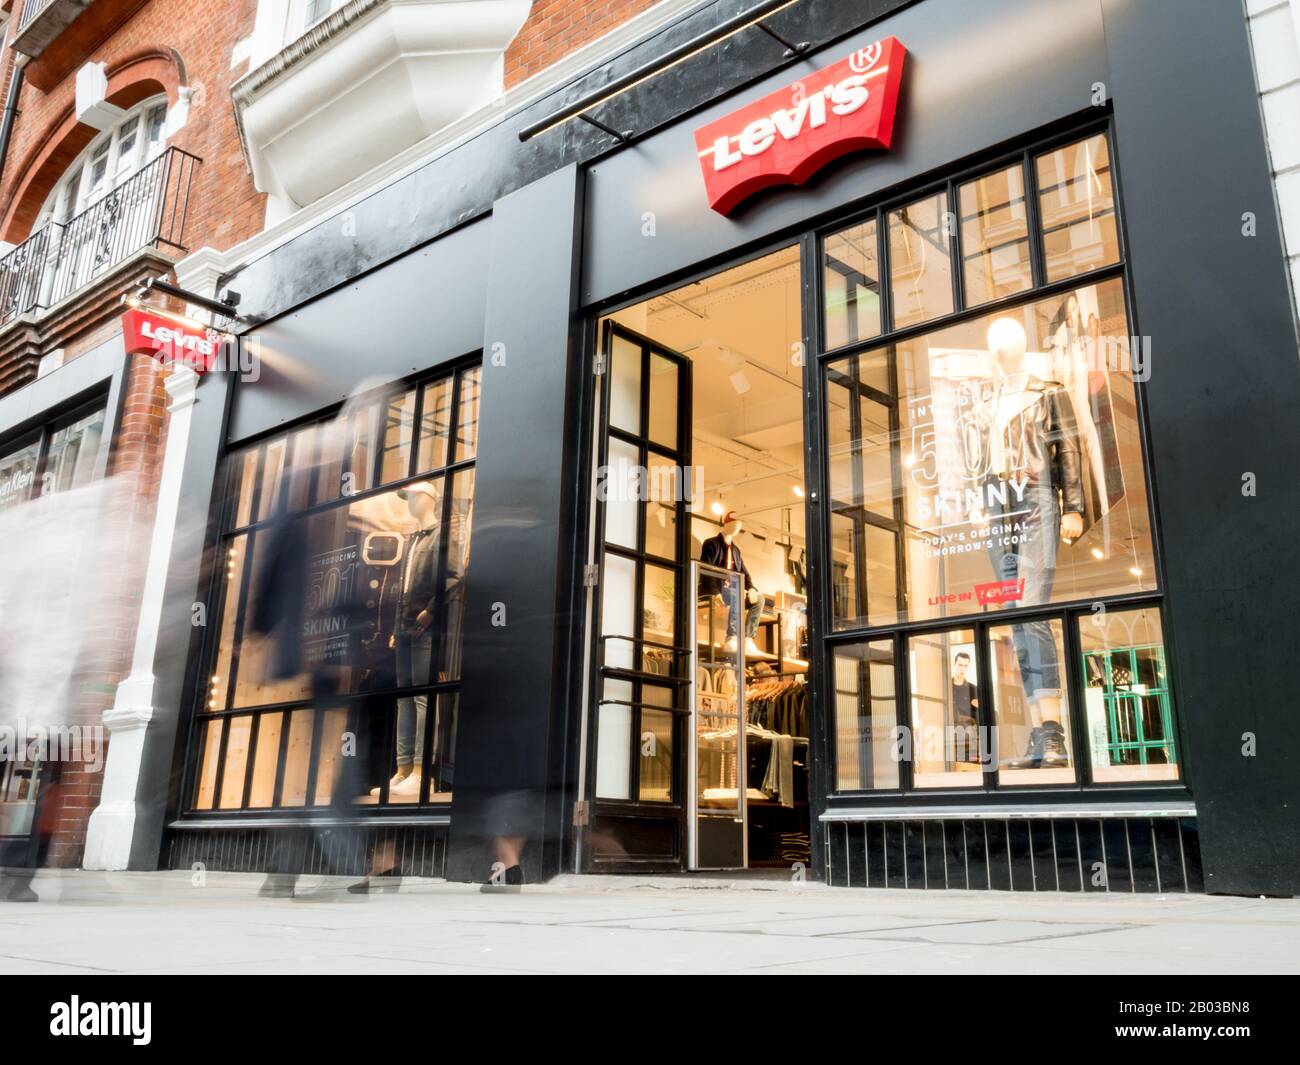 Levis Store, Covent Garden, London. Lange Belichtung, verschwommene Käufer,  die am Laden vor dem Modehaus der High Street, Levi's, spazieren gehen  Stockfotografie - Alamy